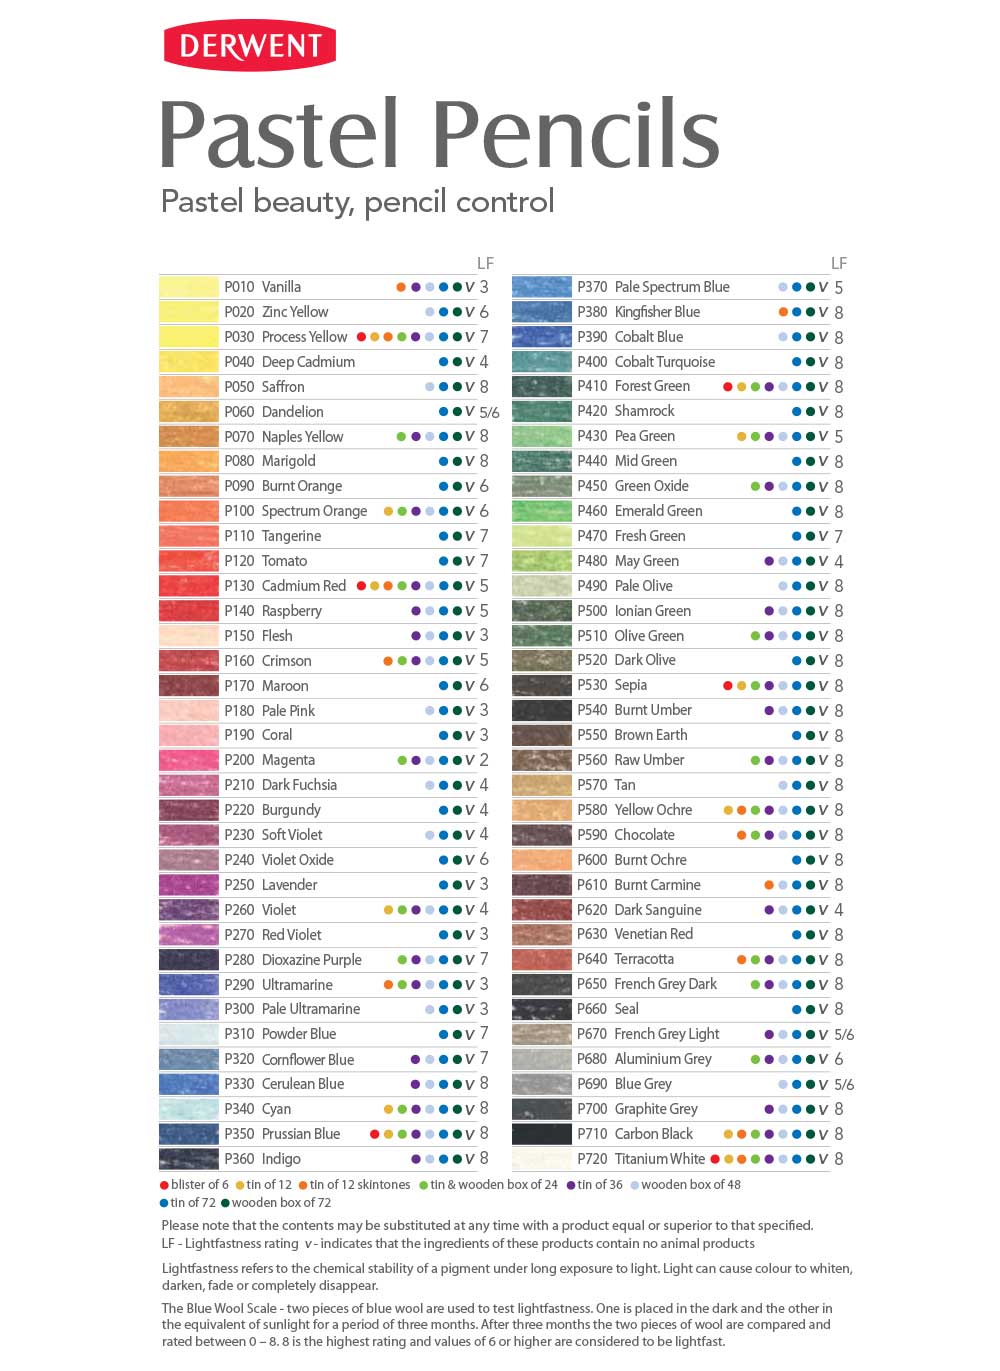 Derwent Pastel v tužce - různé barvy, P670 FRENCH GRY LIGHT